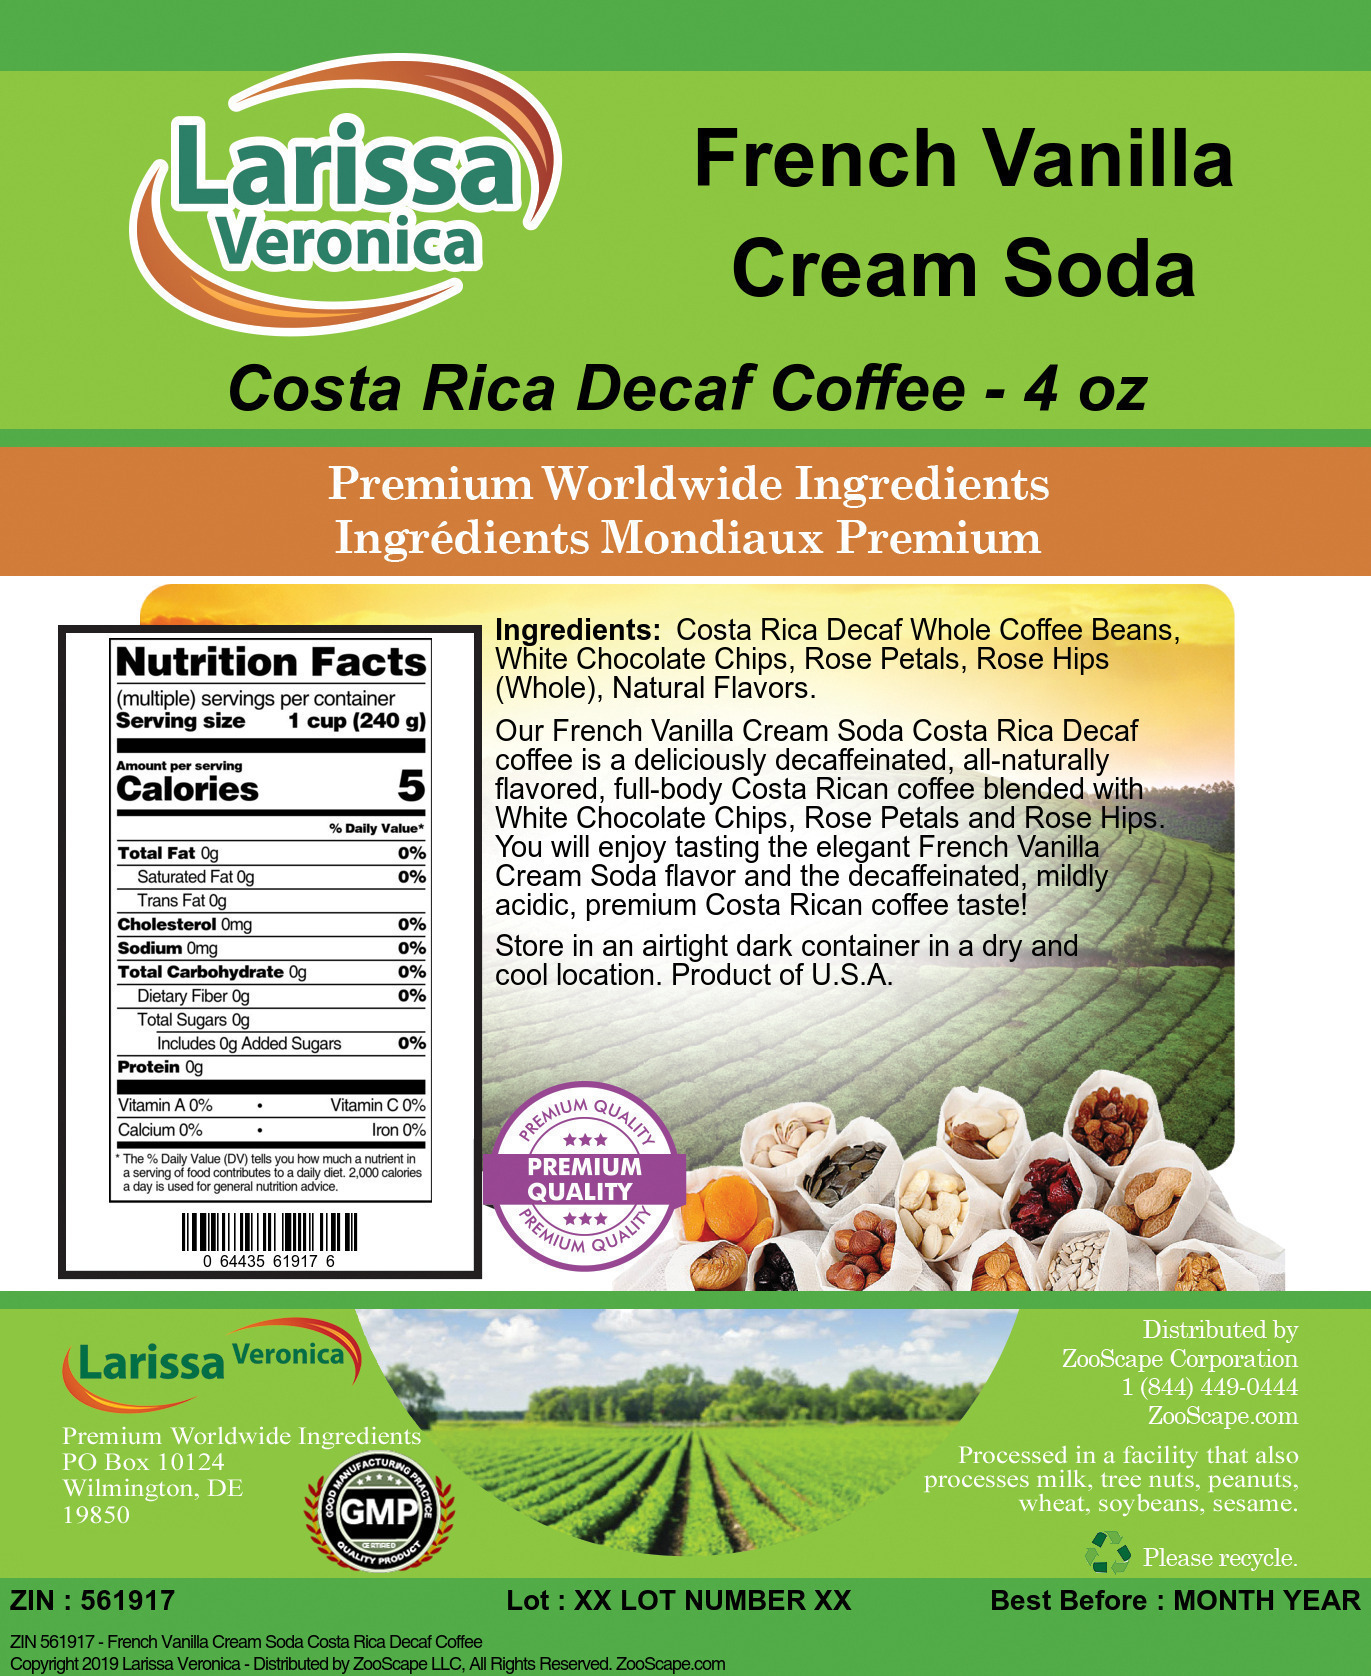 French Vanilla Cream Soda Costa Rica Decaf Coffee - Label